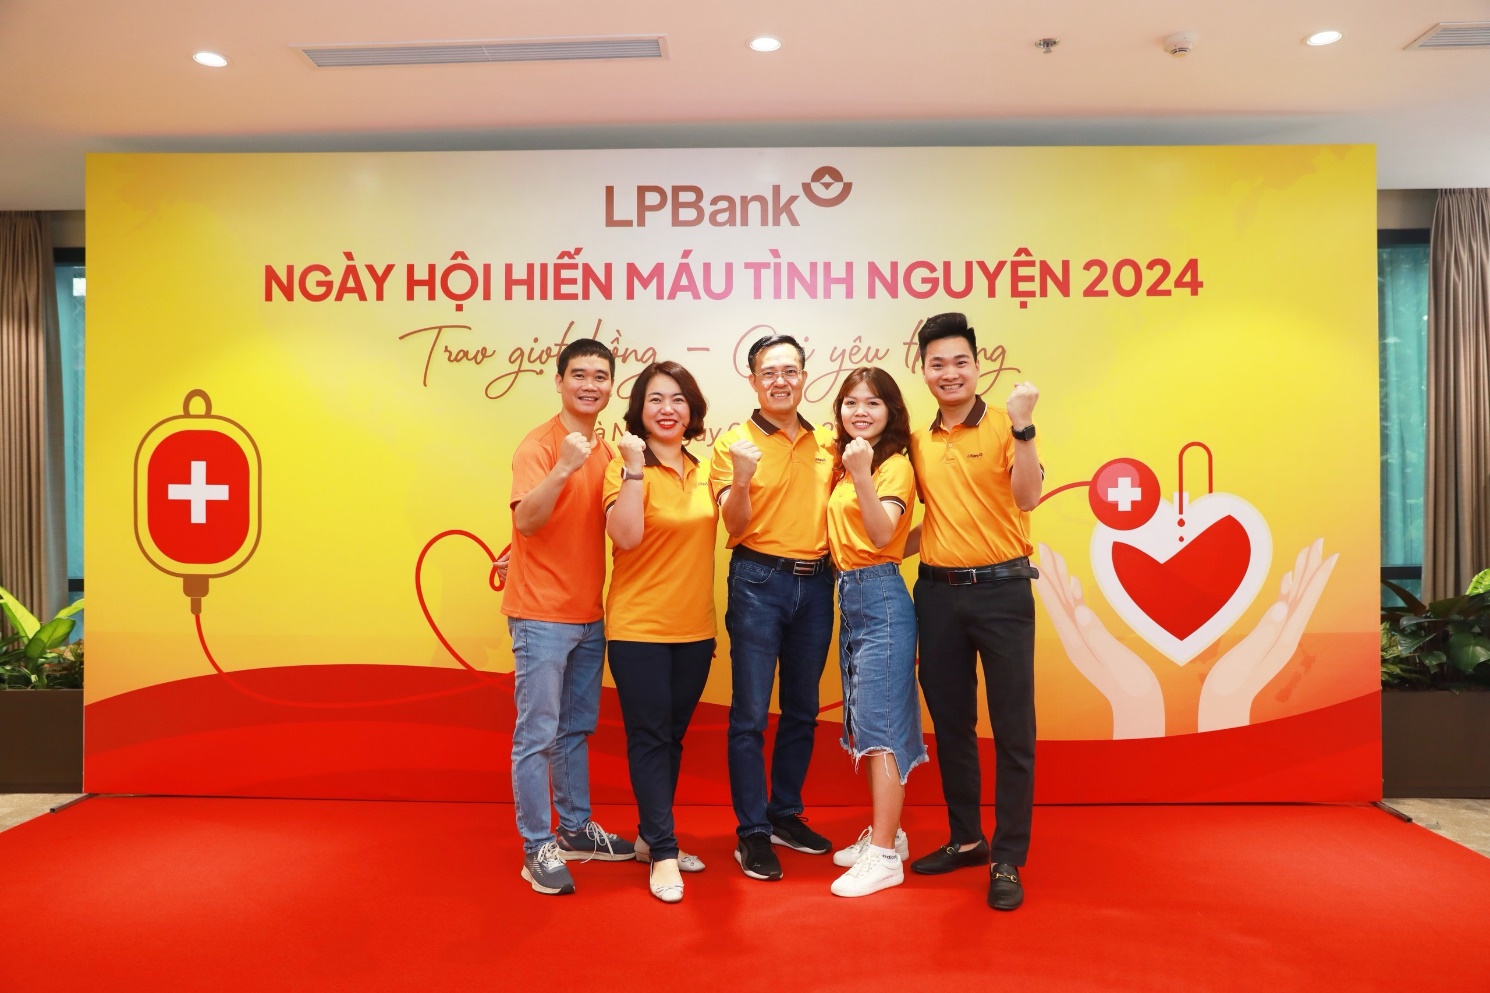 LPBank tổ chức ngày hội hiến máu tình nguyện 2024 “Trao giọt hồng - Gửi yêu thương”- Ảnh 1.